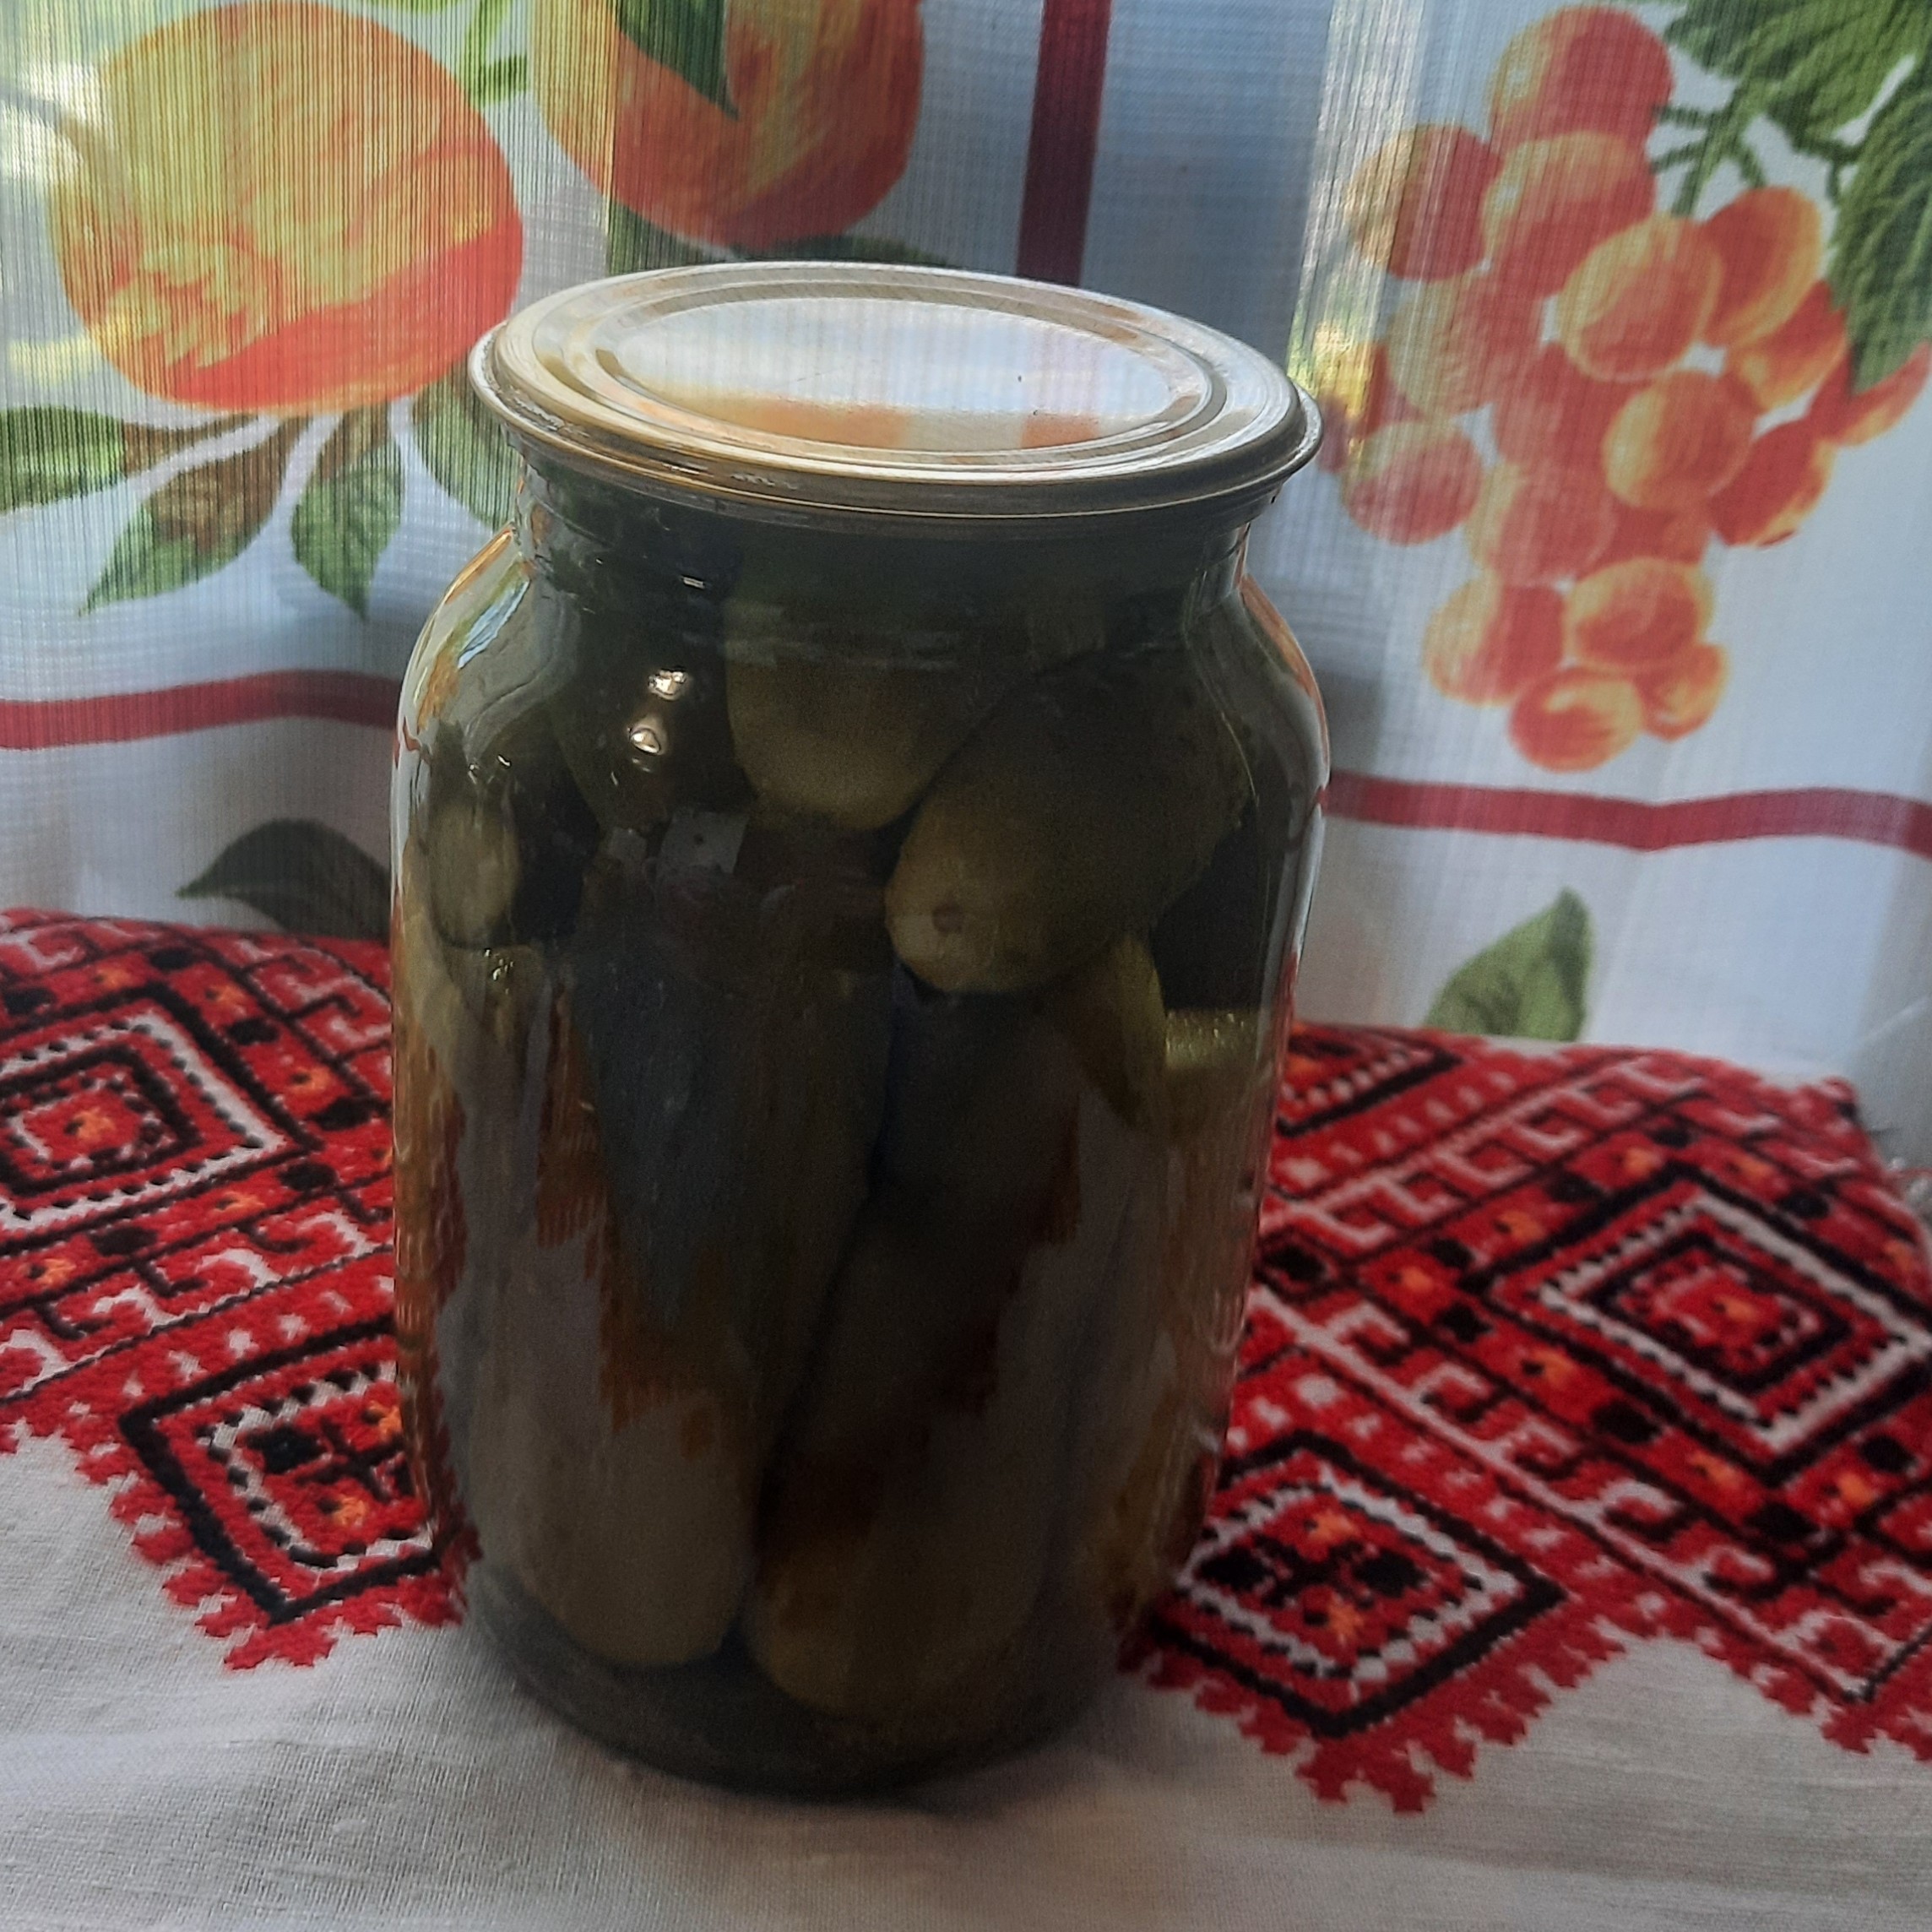 Огурцы на зиму с кориандром (рецепт на 3 литровые банки)